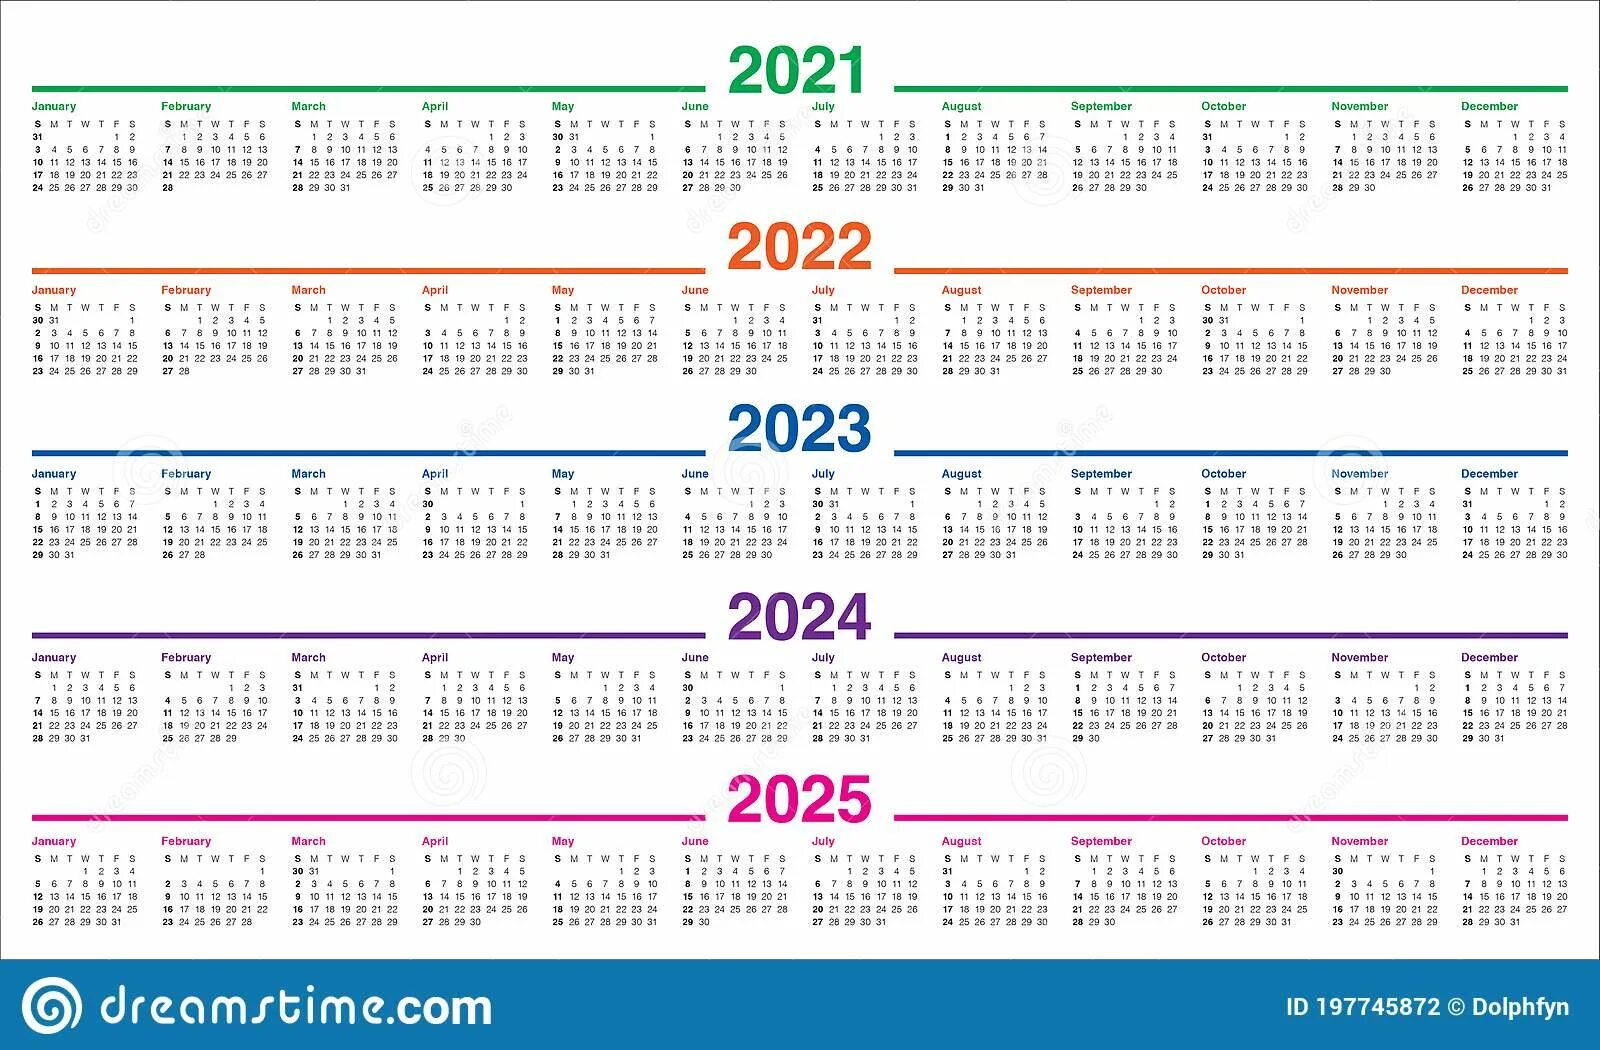 Календарь 2018 2019 2020 2021. Календарь 2018 2019 2020 2021 2022 2023. Календарная сетка 2022 2023. Календарь 2021 2022 на одном листе. Календарь 2020 2021 год